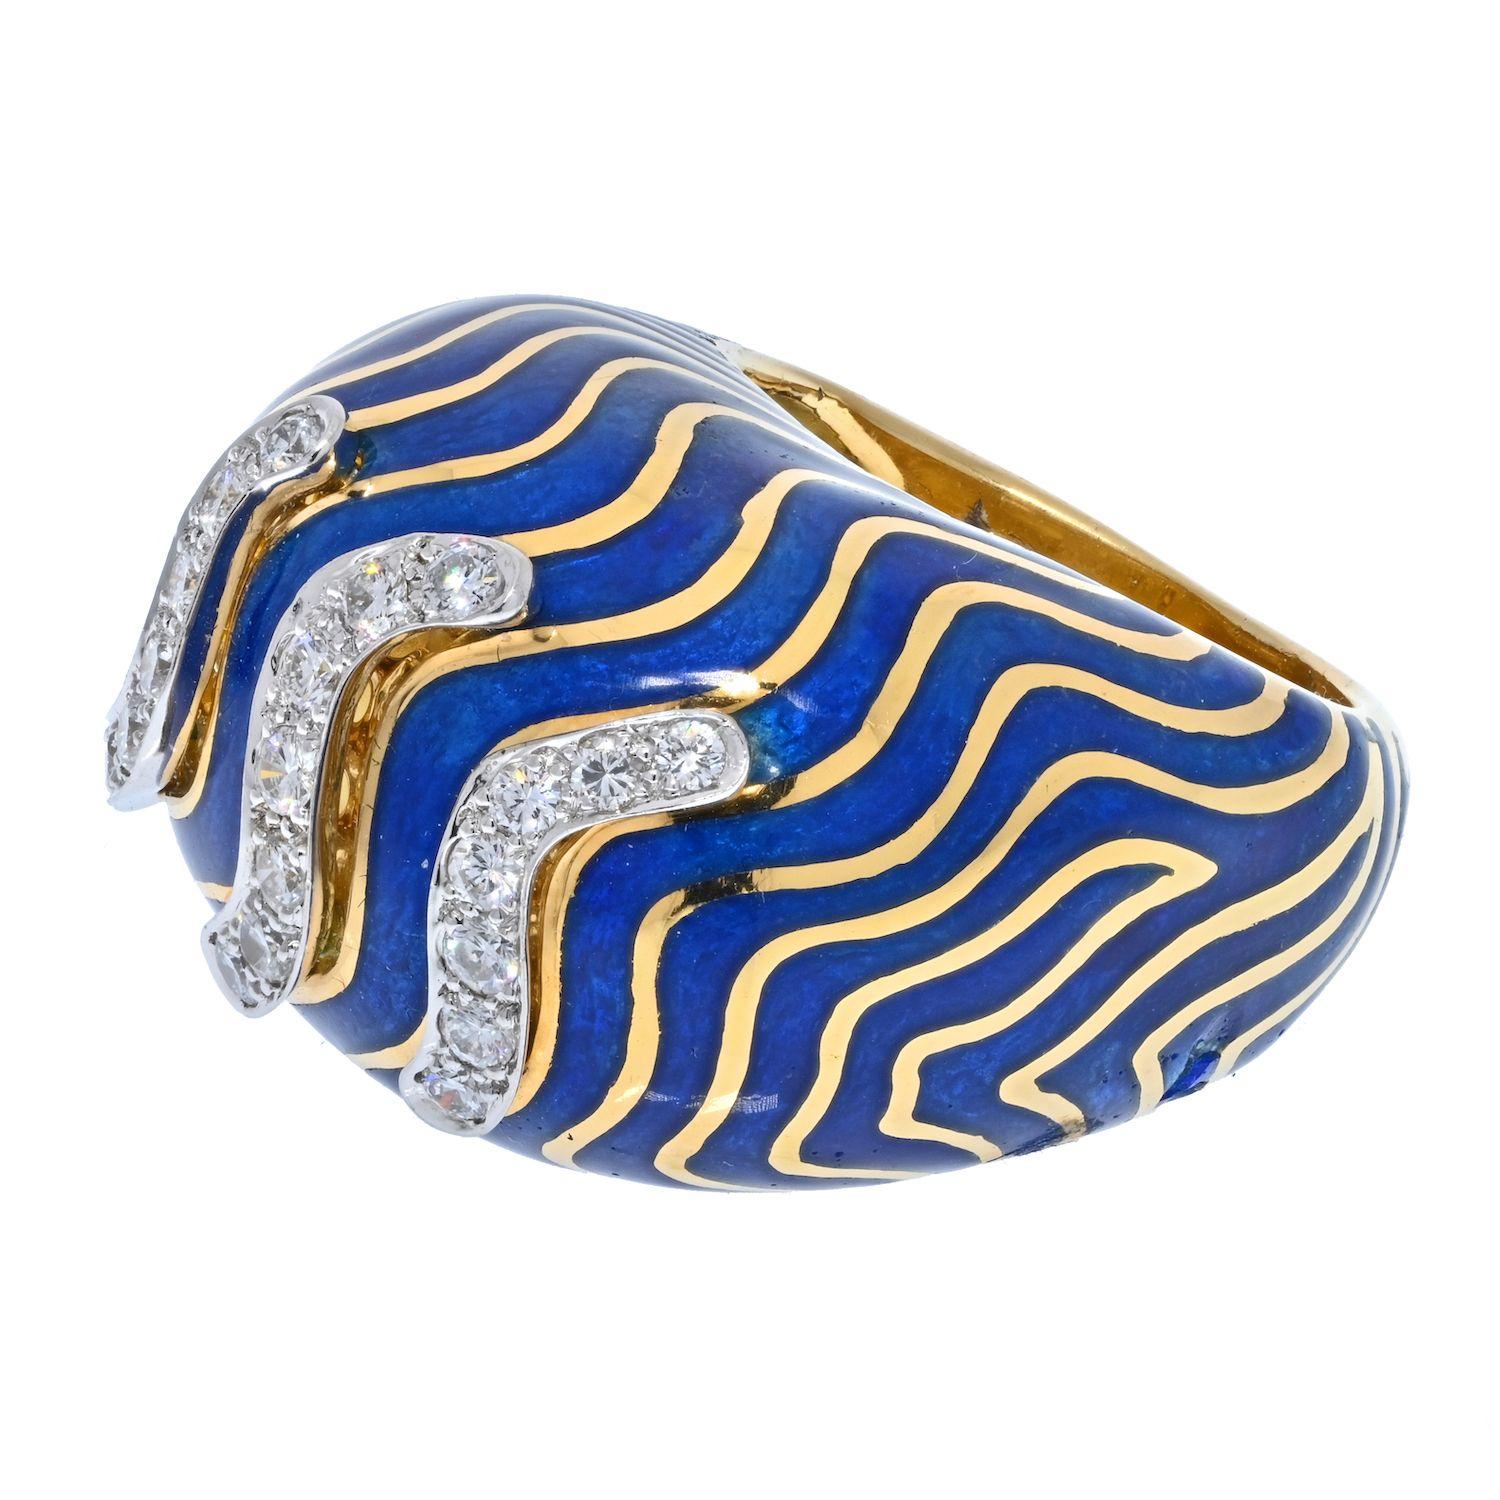 Dies ist eine schöne Bombe Stil Ring von David Webb mit blau emailliert gestreiftes Muster und einen Hauch von runden Diamanten auf der Oberseite. Der perfekte Cocktailring für unterwegs. Sie werden die gewellte blaue Emaille-Oberseite und die ca.